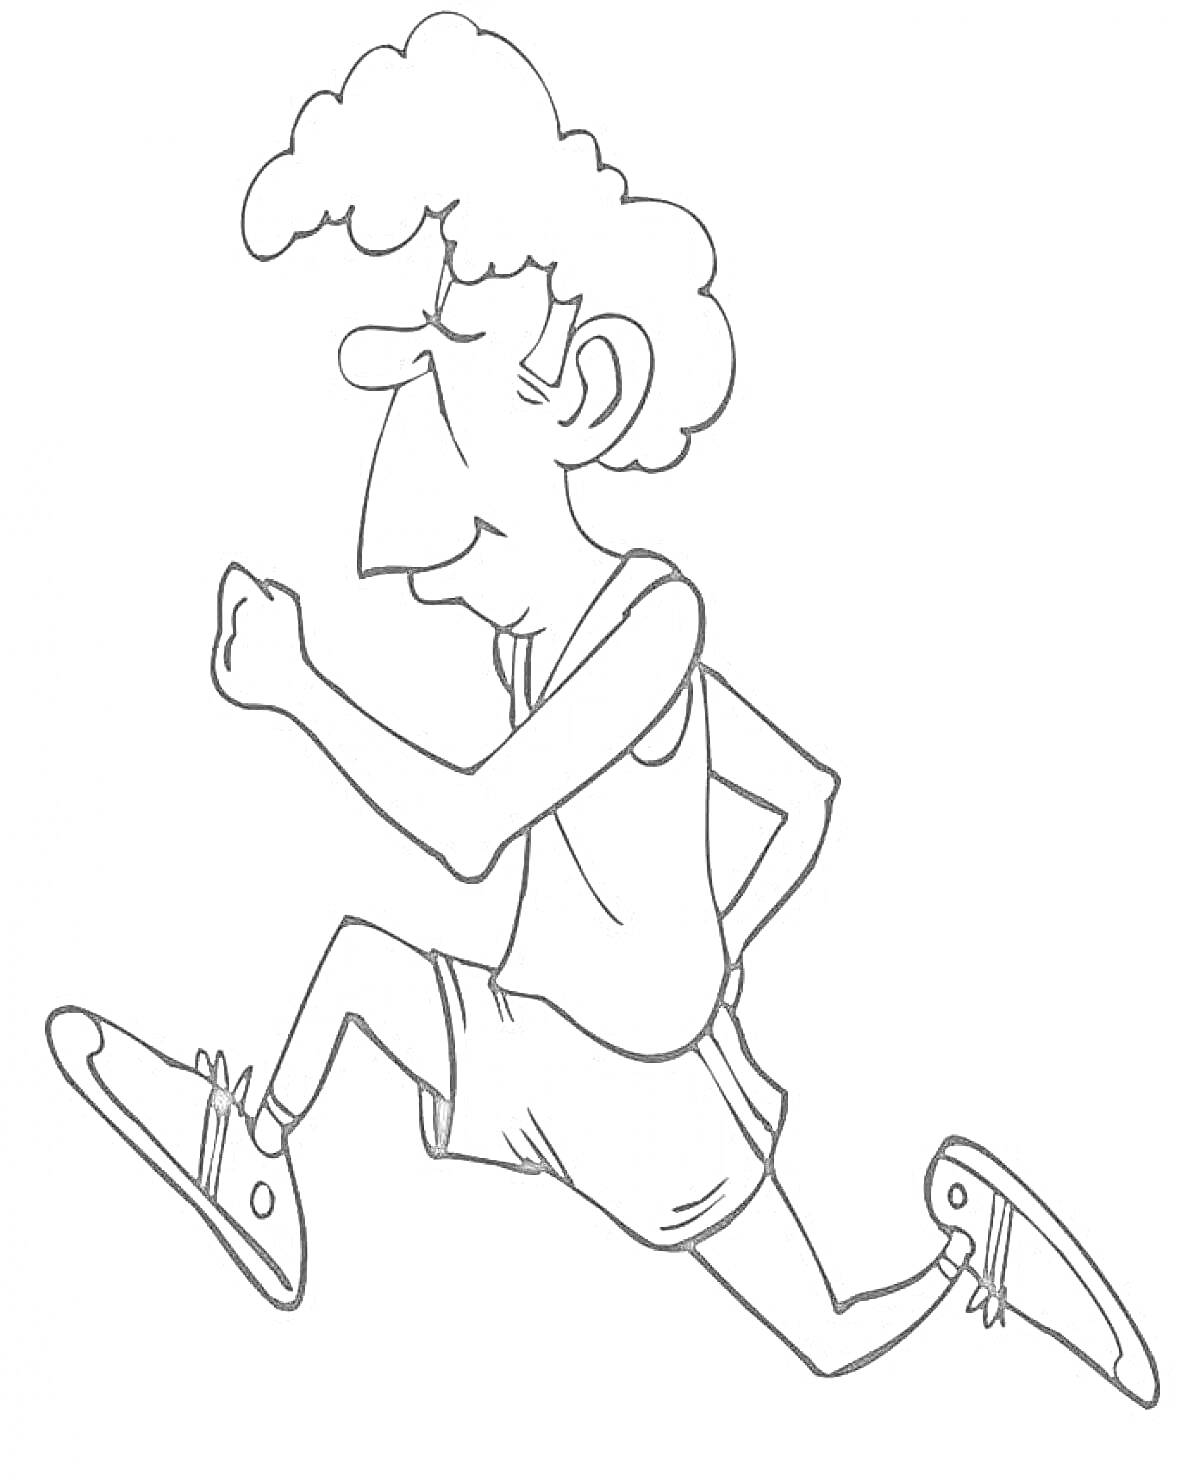 Раскраска Человек, бегущий в спортивной одежде и кроссовках